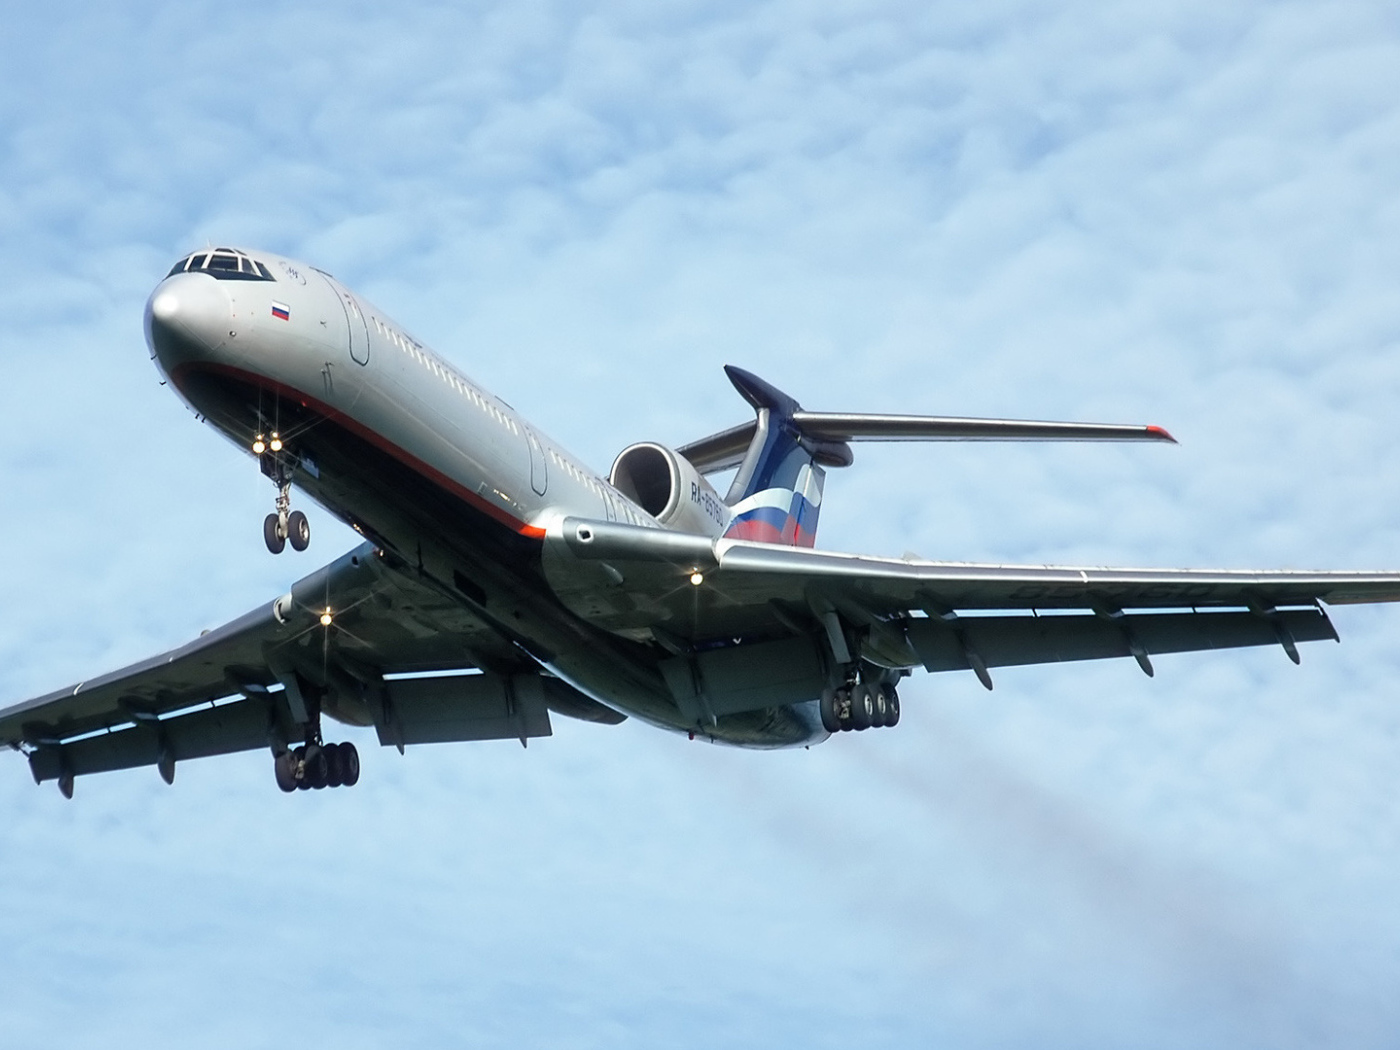 Самолет ТУ-154 российской авиакомпании Аэрофлот на взлете 